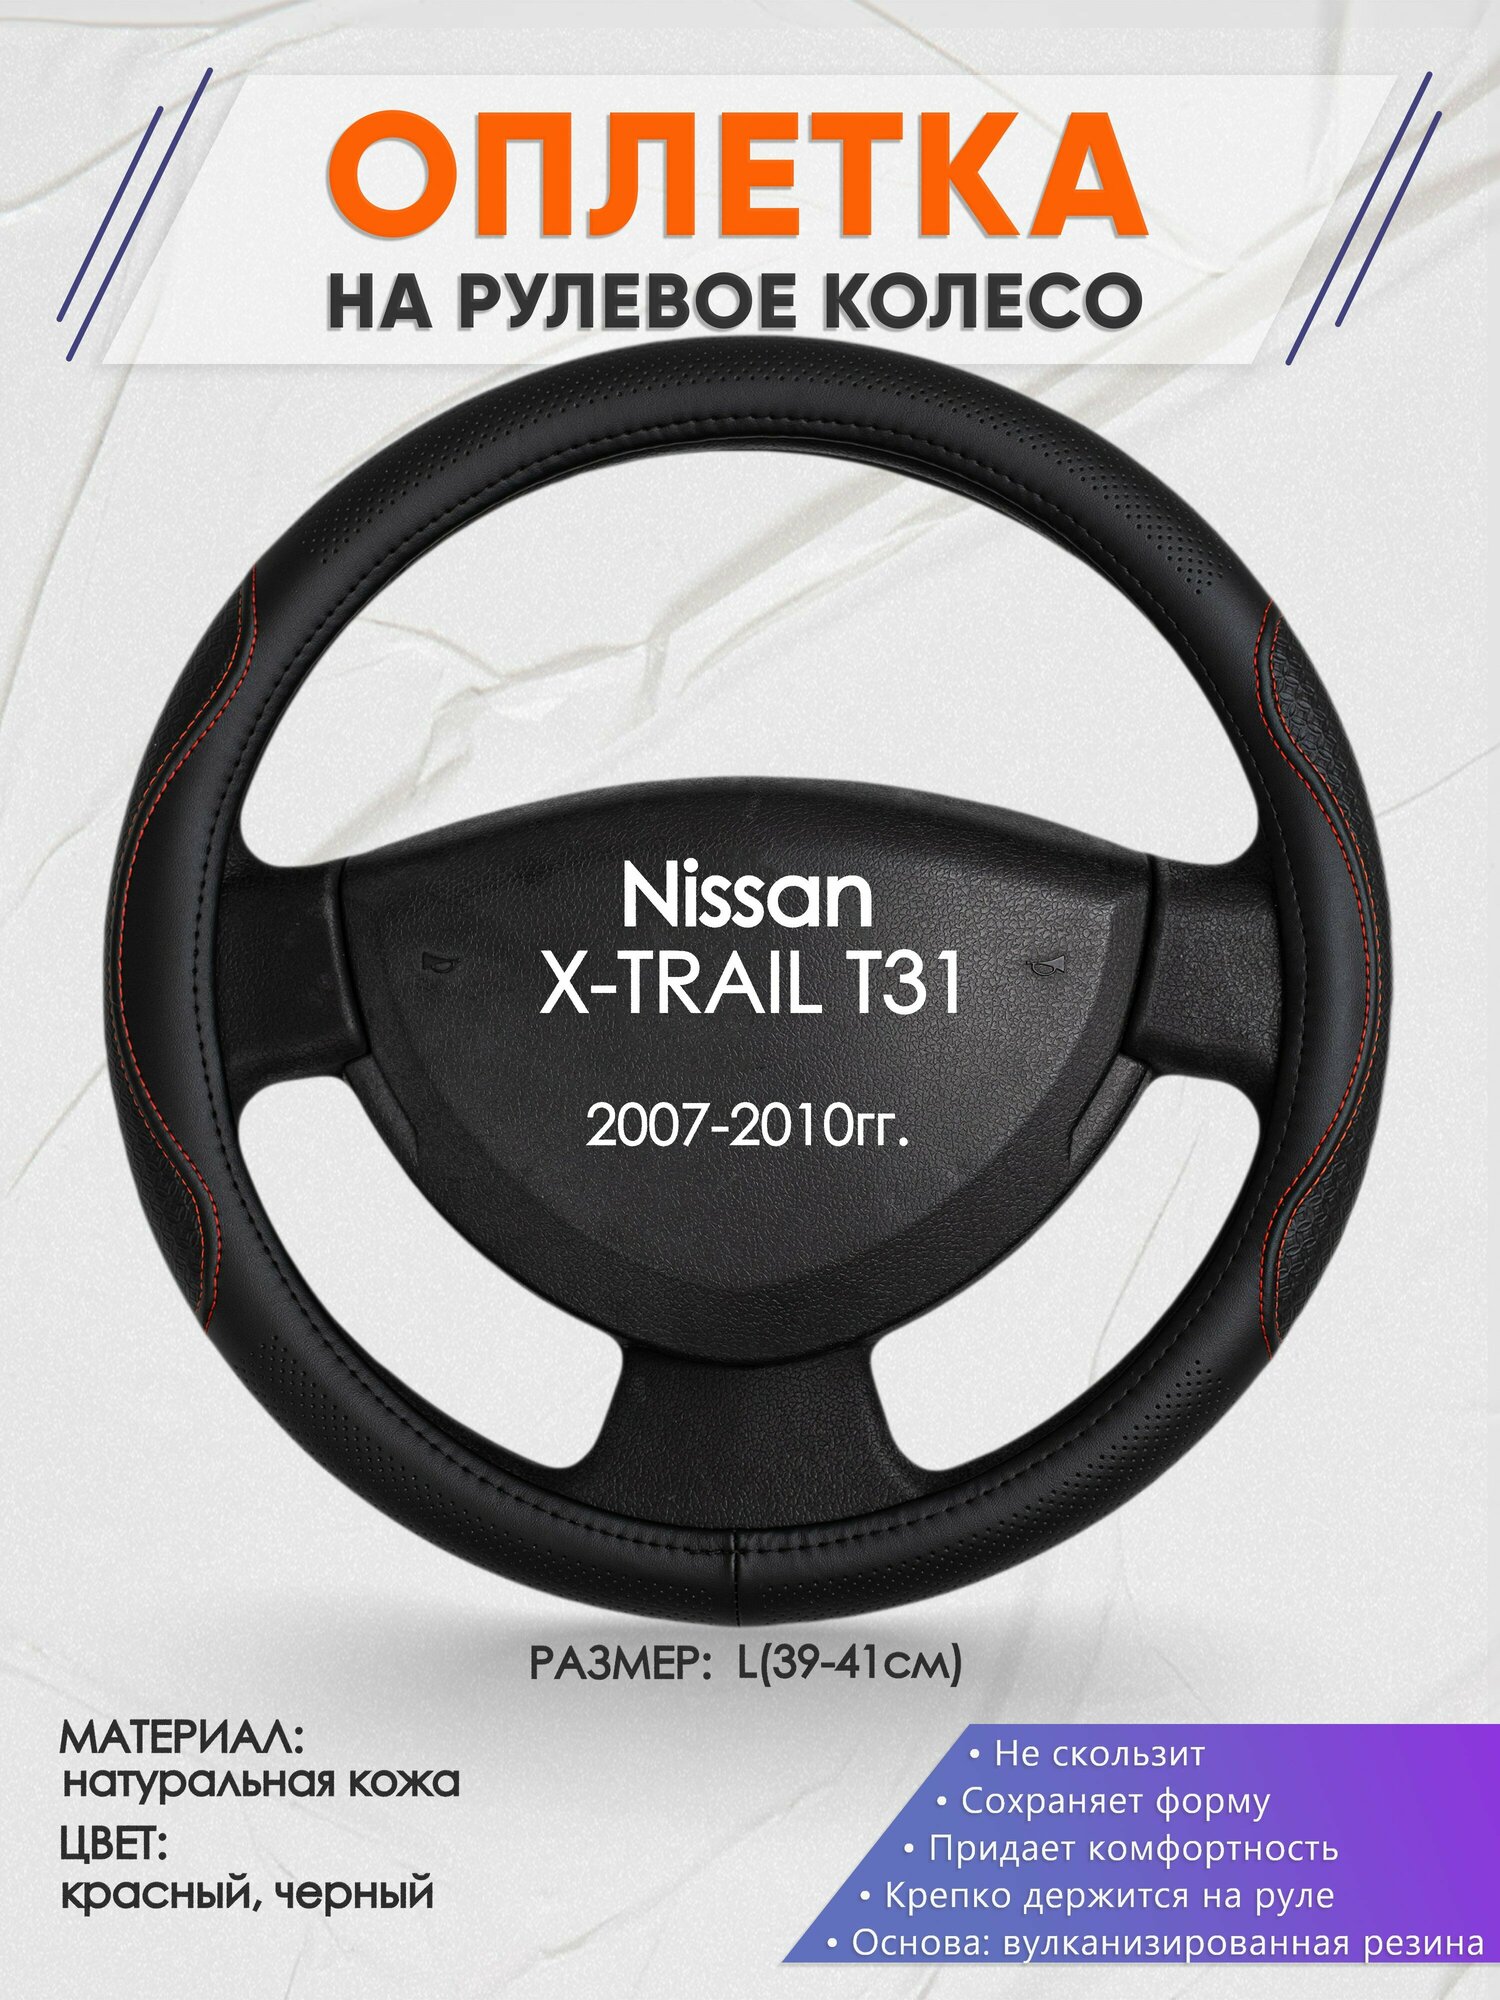 Оплетка на руль для Nissan X-TRAIL T31(Ниссан Икс Трейл) 2007-2010, L(39-41см), Натуральная кожа 27